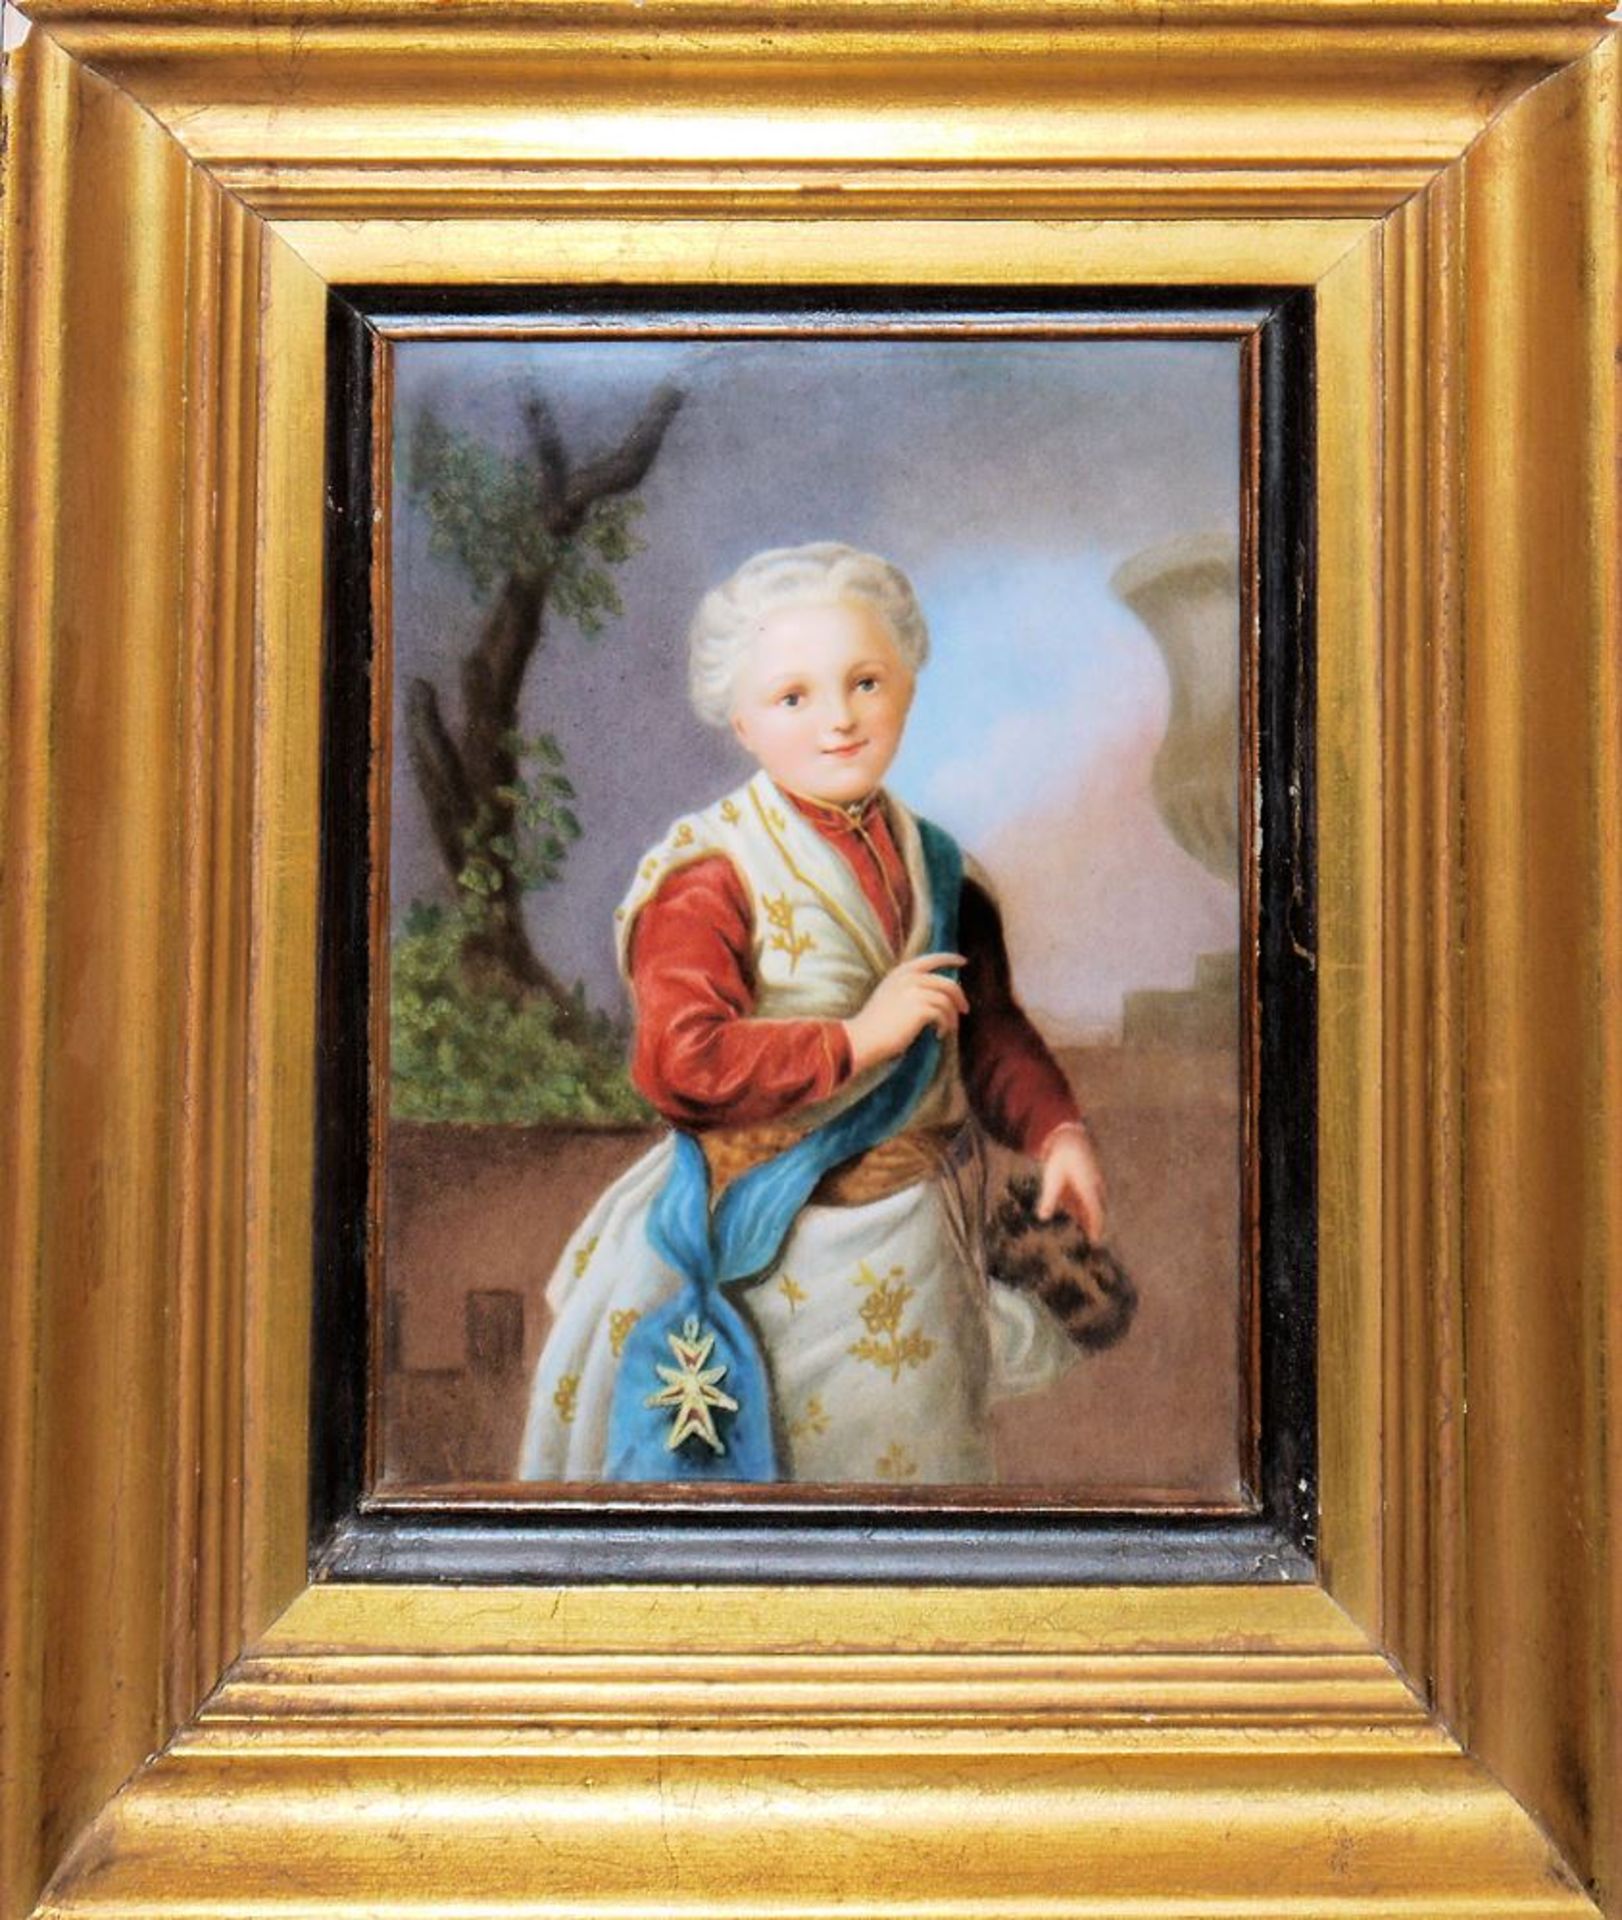 Bildnis eines französischen Infanten der Rokokozeit, Porzellanbildplatte, 19. Jh., gerahmt